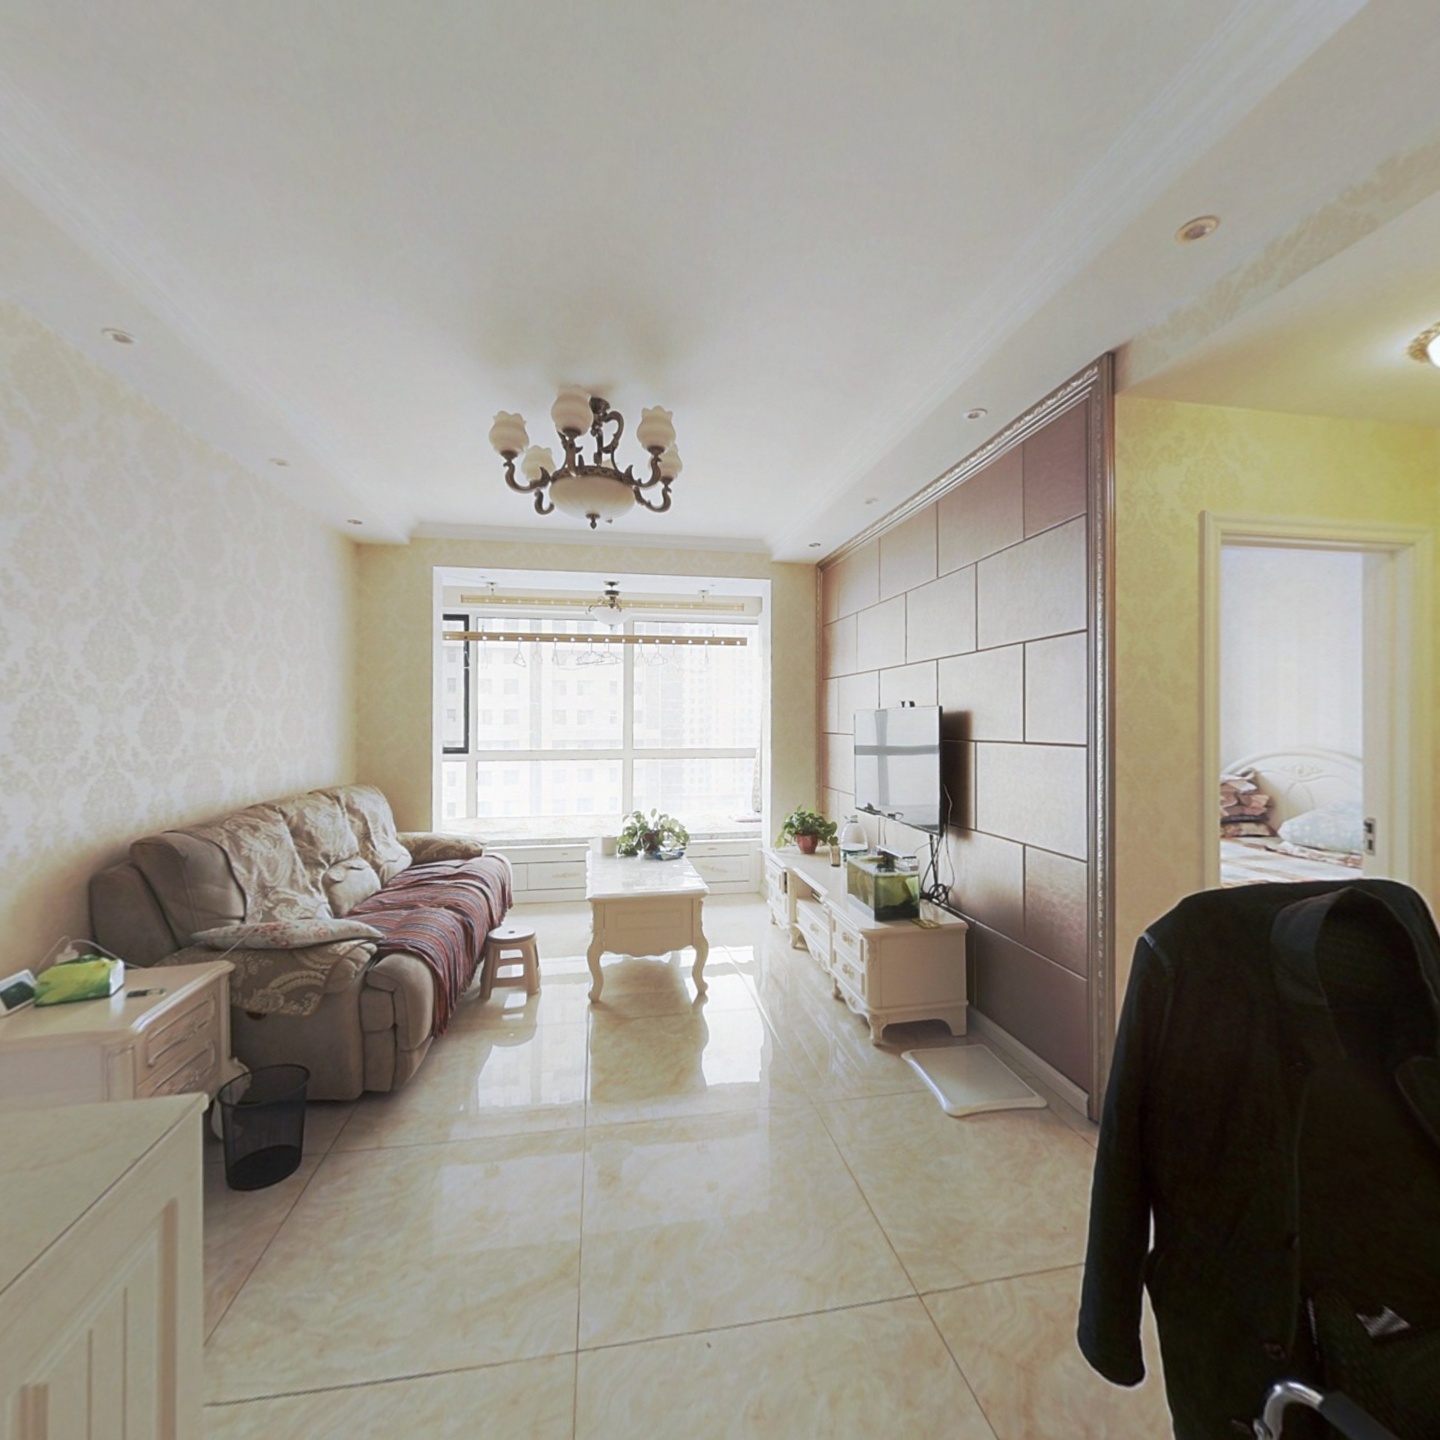 保利达江湾城 精装修 标准一室一厅 中间层 价位可议